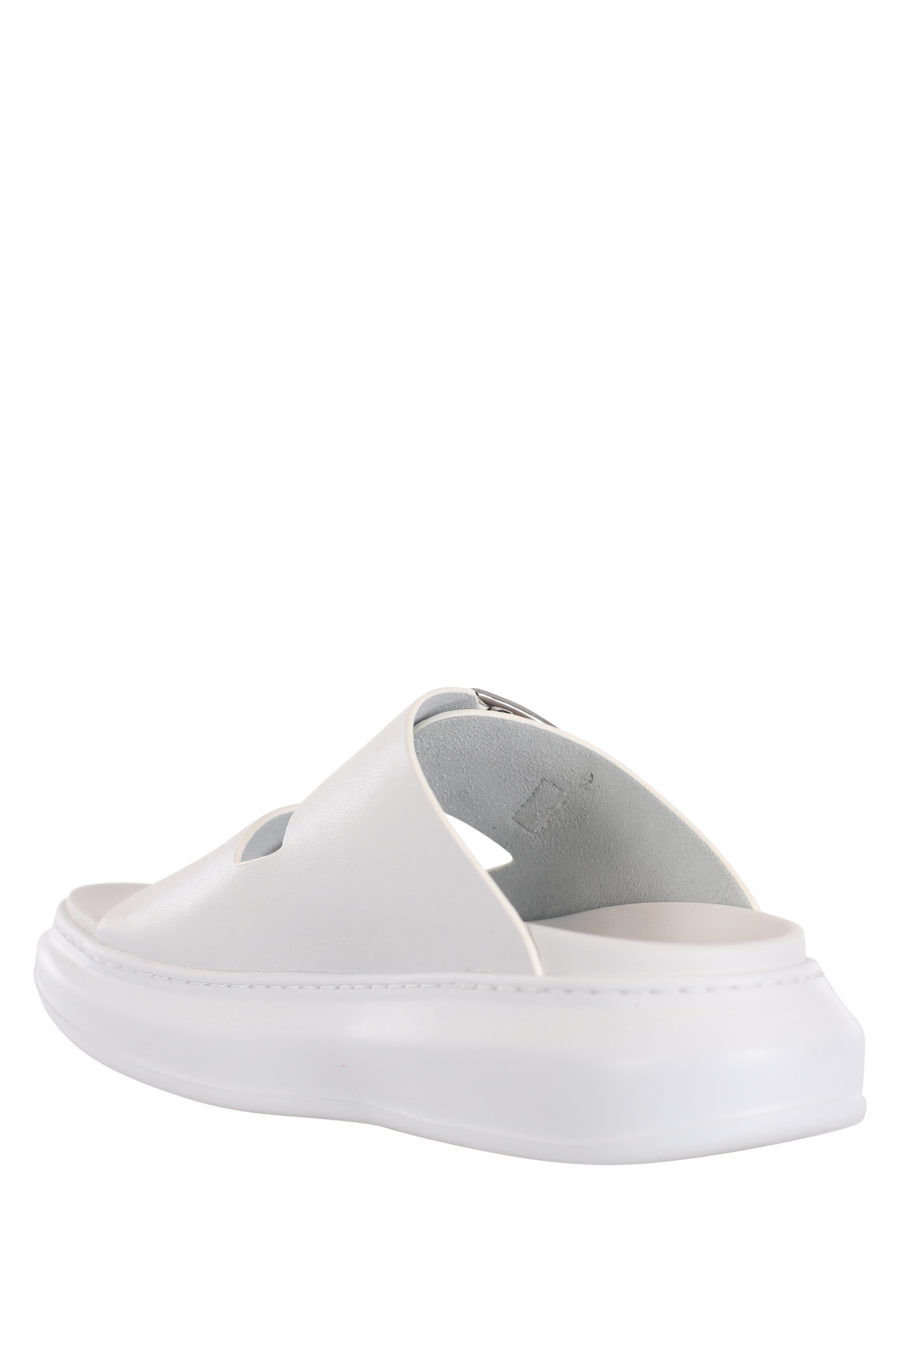 Sandalias blancas con hebillas y logo negro en el lateral - IMG 0033